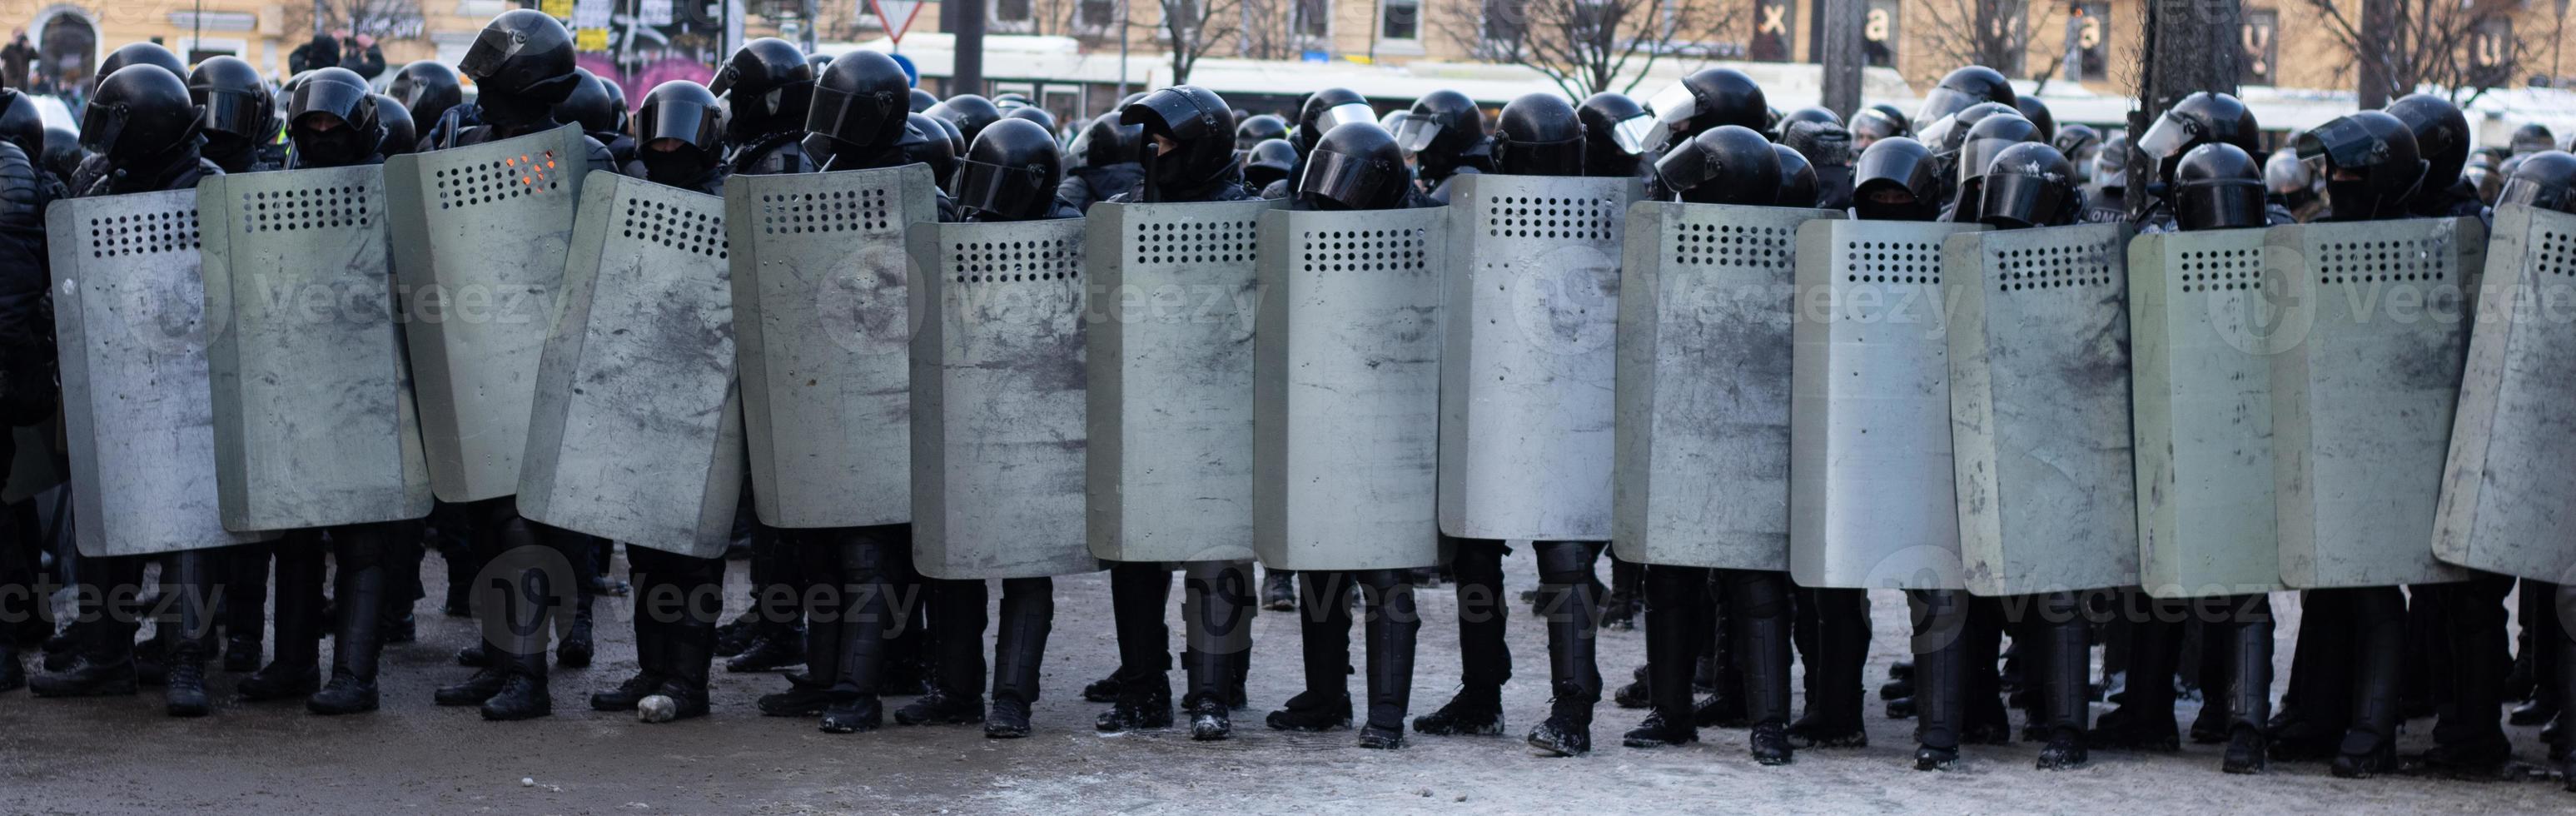 linje av polis upplopp krafter, protest i stad. enhetlig rustning med sköldar foto